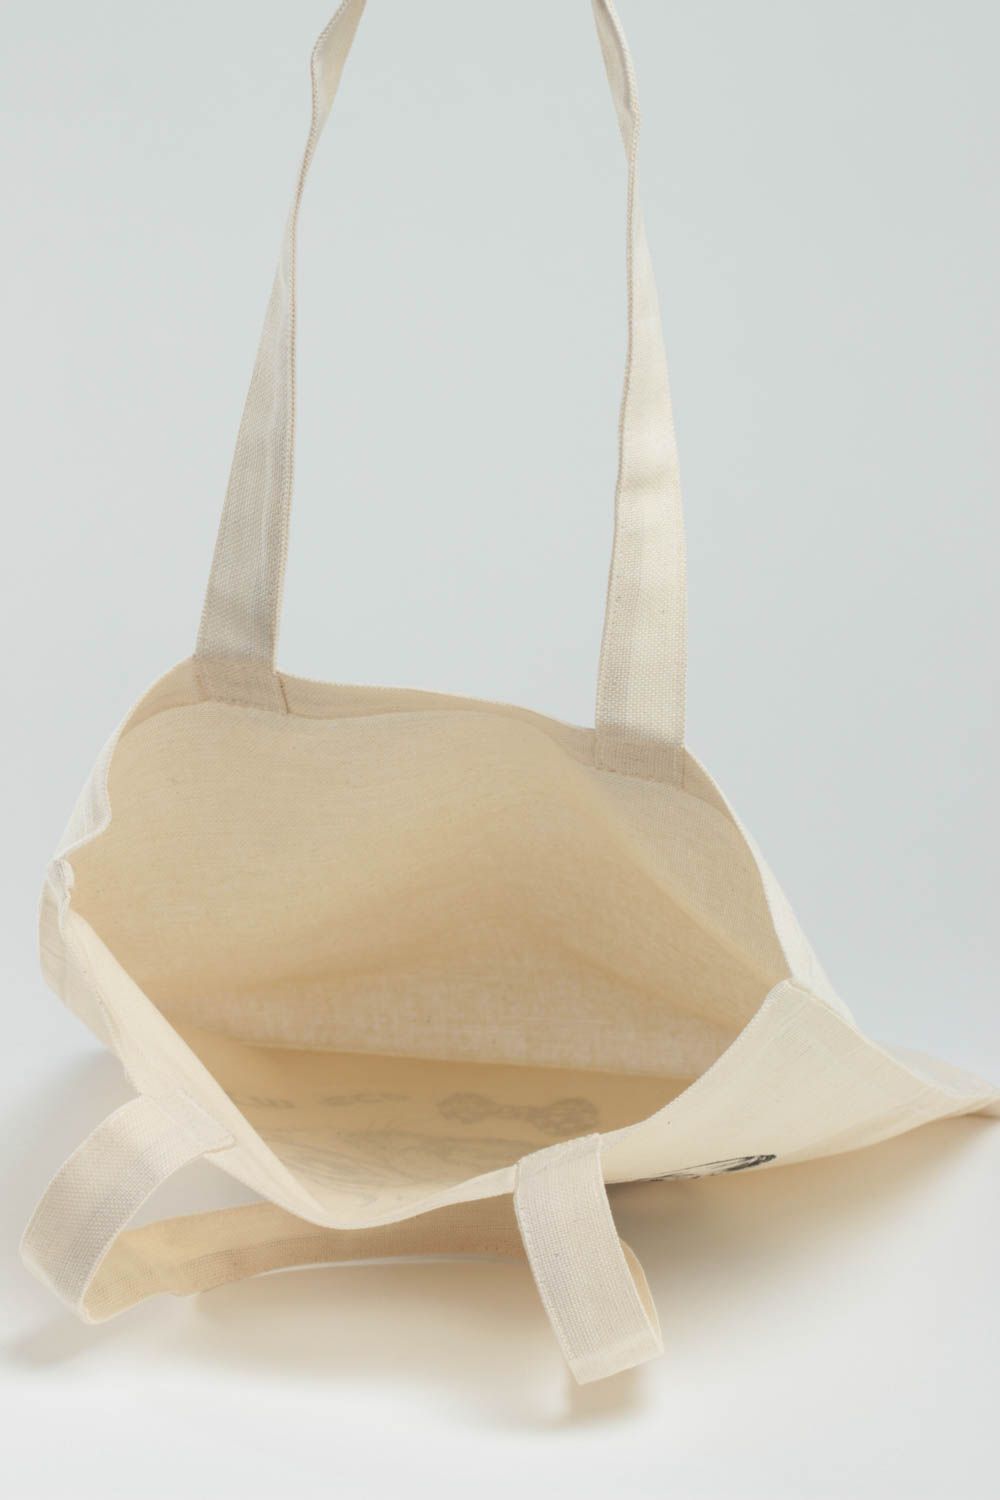 Öko Handtasche aus Stoff in Weiß mit Farben Bemalung handgemacht originell foto 4